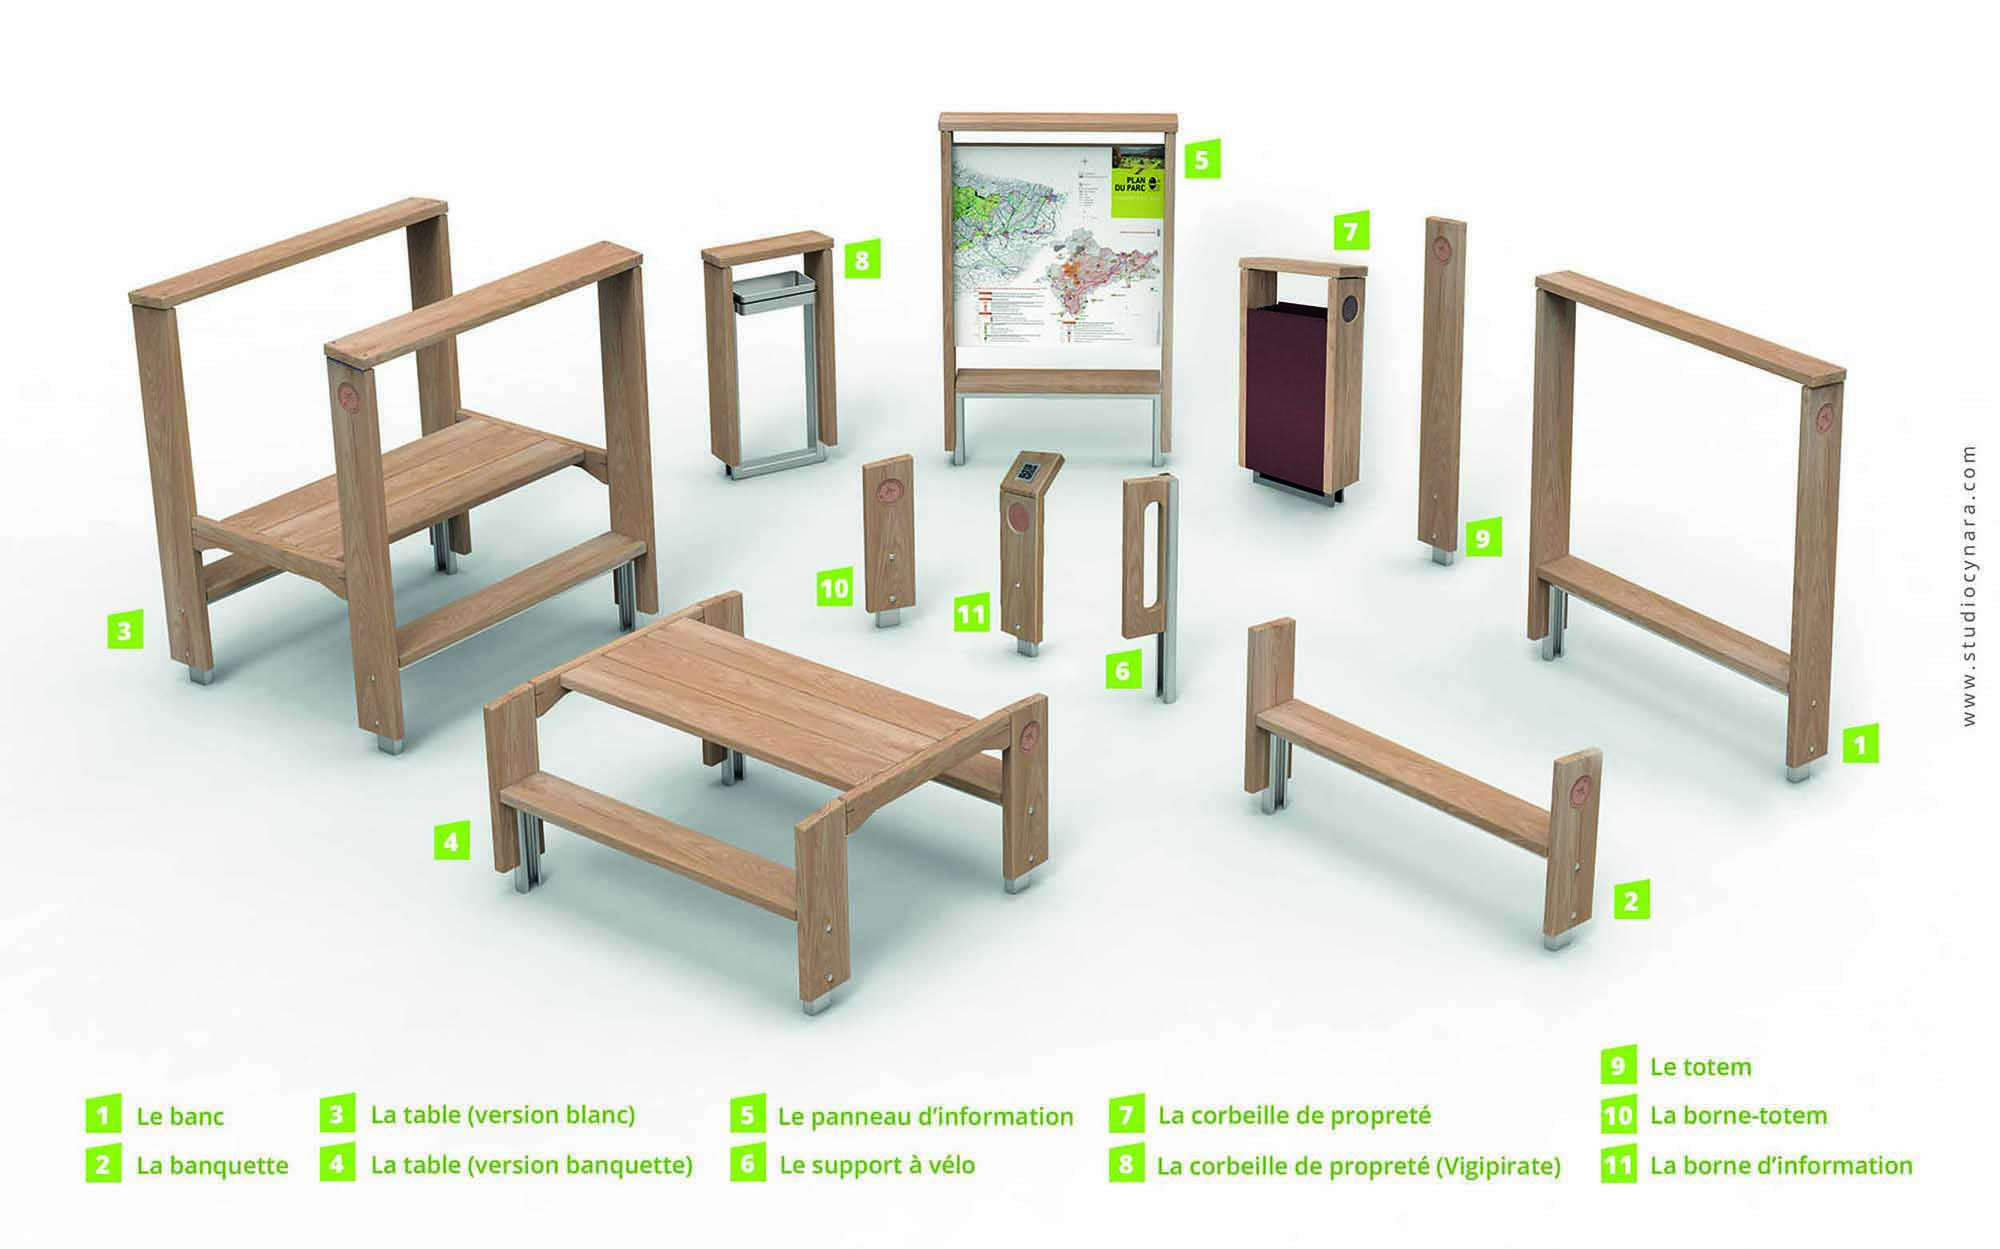 3D photoréaliste de toute la gamme de mobilier bois extraite du catalogue